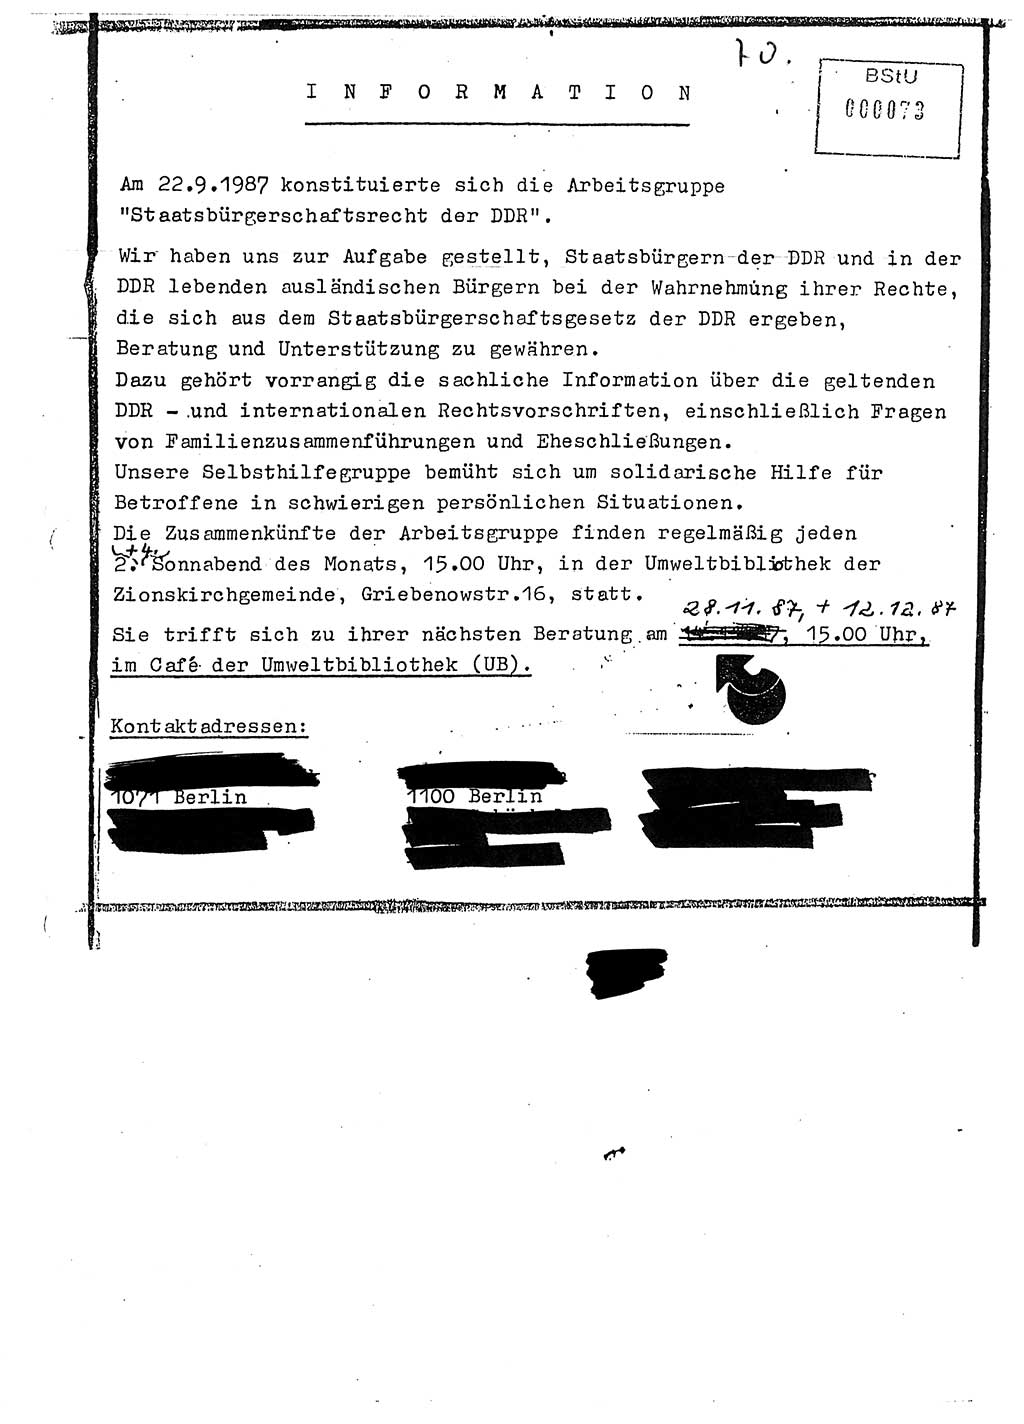 Diplomarbeit Major Günter Müller (HA Ⅸ/9), Ministerium für Staatssicherheit (MfS) [Deutsche Demokratische Republik (DDR)], Juristische Hochschule (JHS), Vertrauliche Verschlußsache (VVS) o001-402/89, Potsdam 1989, Seite 70 (Dipl.-Arb. MfS DDR JHS VVS o001-402/89 1989, S. 70)